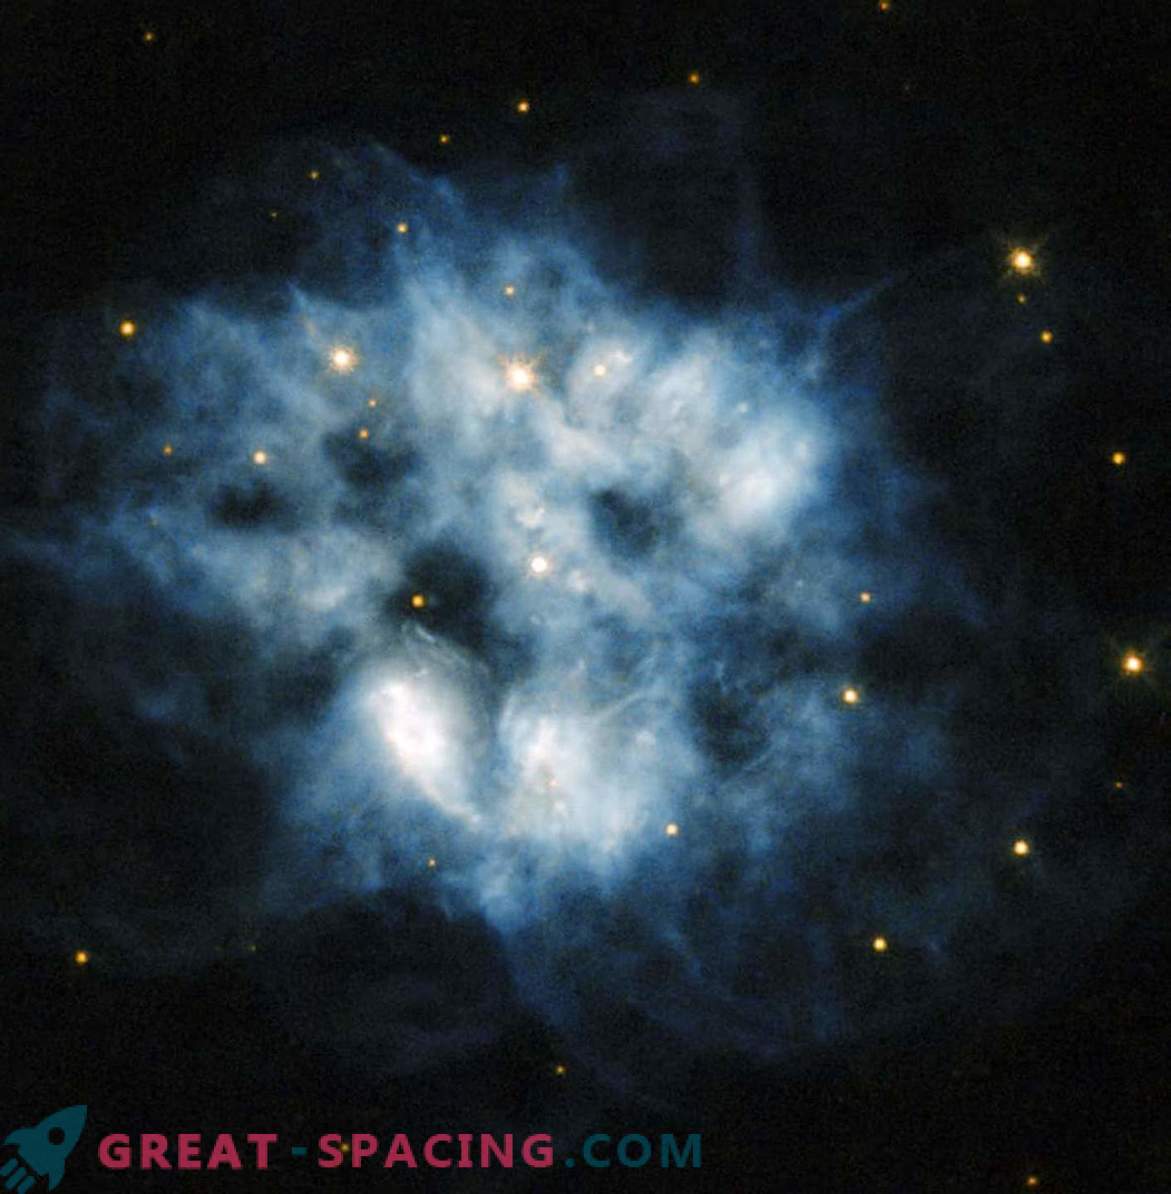 Supernova kvarleva med kraftig värmestrålning